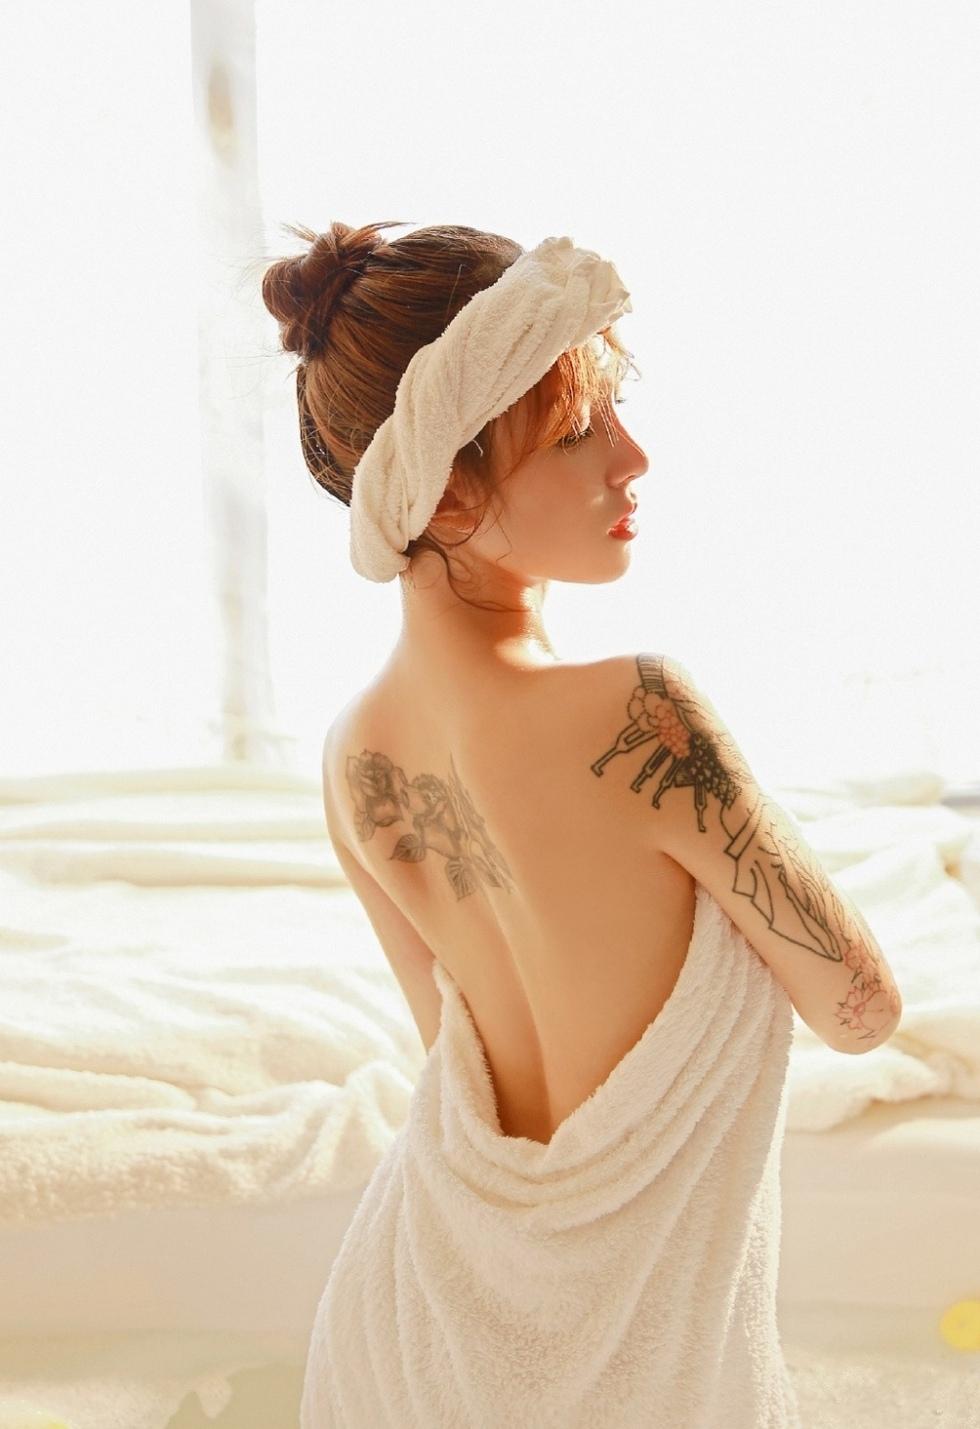 纹身美女白嫩胴体浴室性感诱惑写真图片